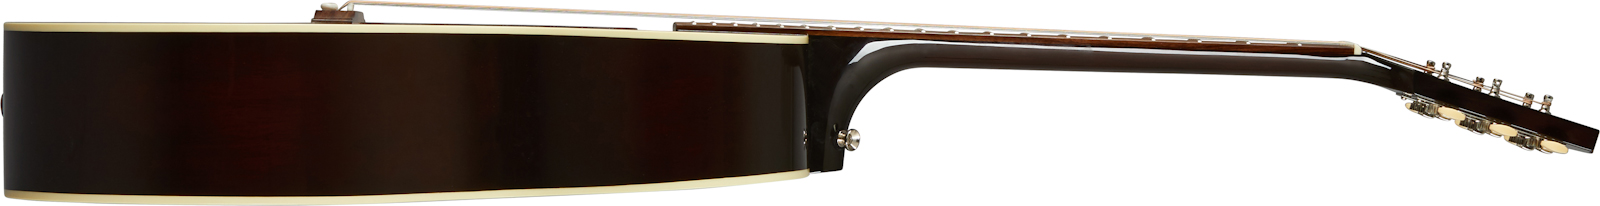 Gibson L-00 Original 2020 Parlor Epicea Acajou Rw - Vintage Sunburst - Guitare Electro Acoustique - Variation 2